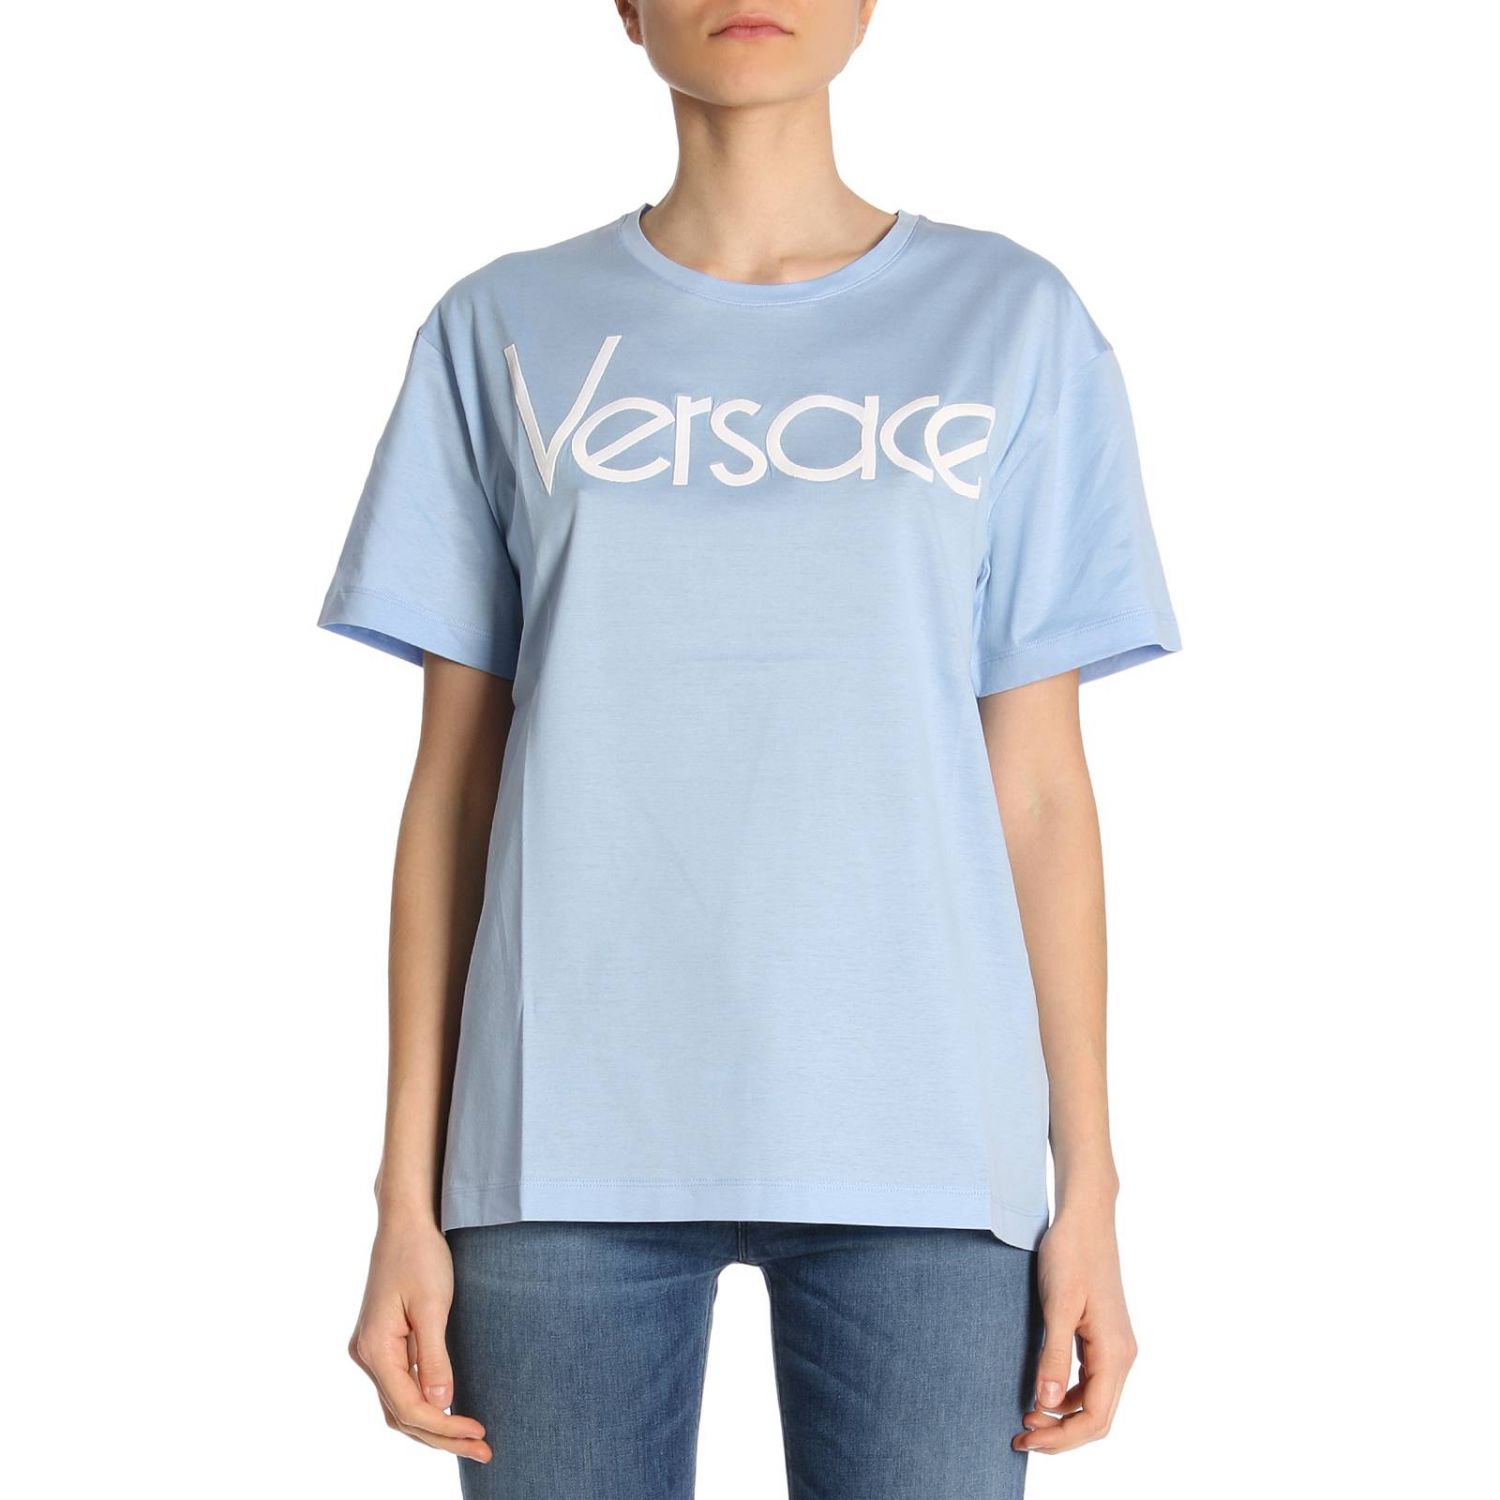 blue versace shirt women's